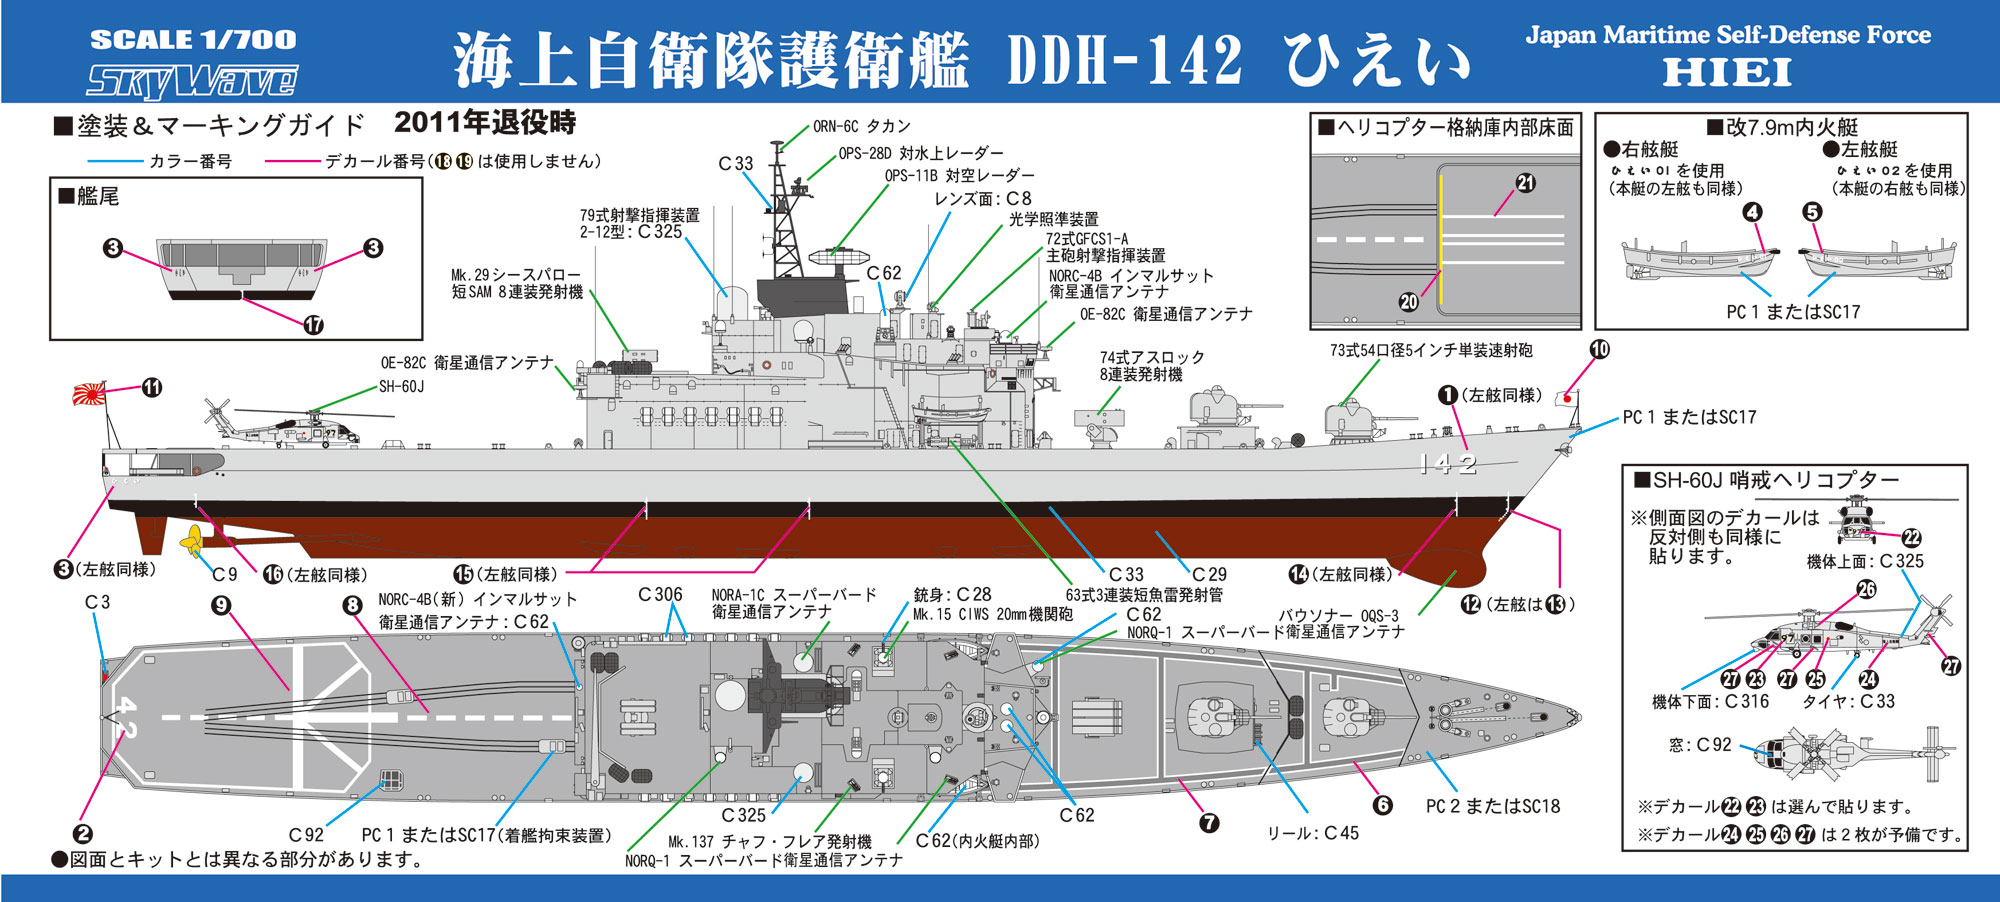 J81 1/700 海上自衛隊 護衛艦 DDH-142 ひえい – ピットロード